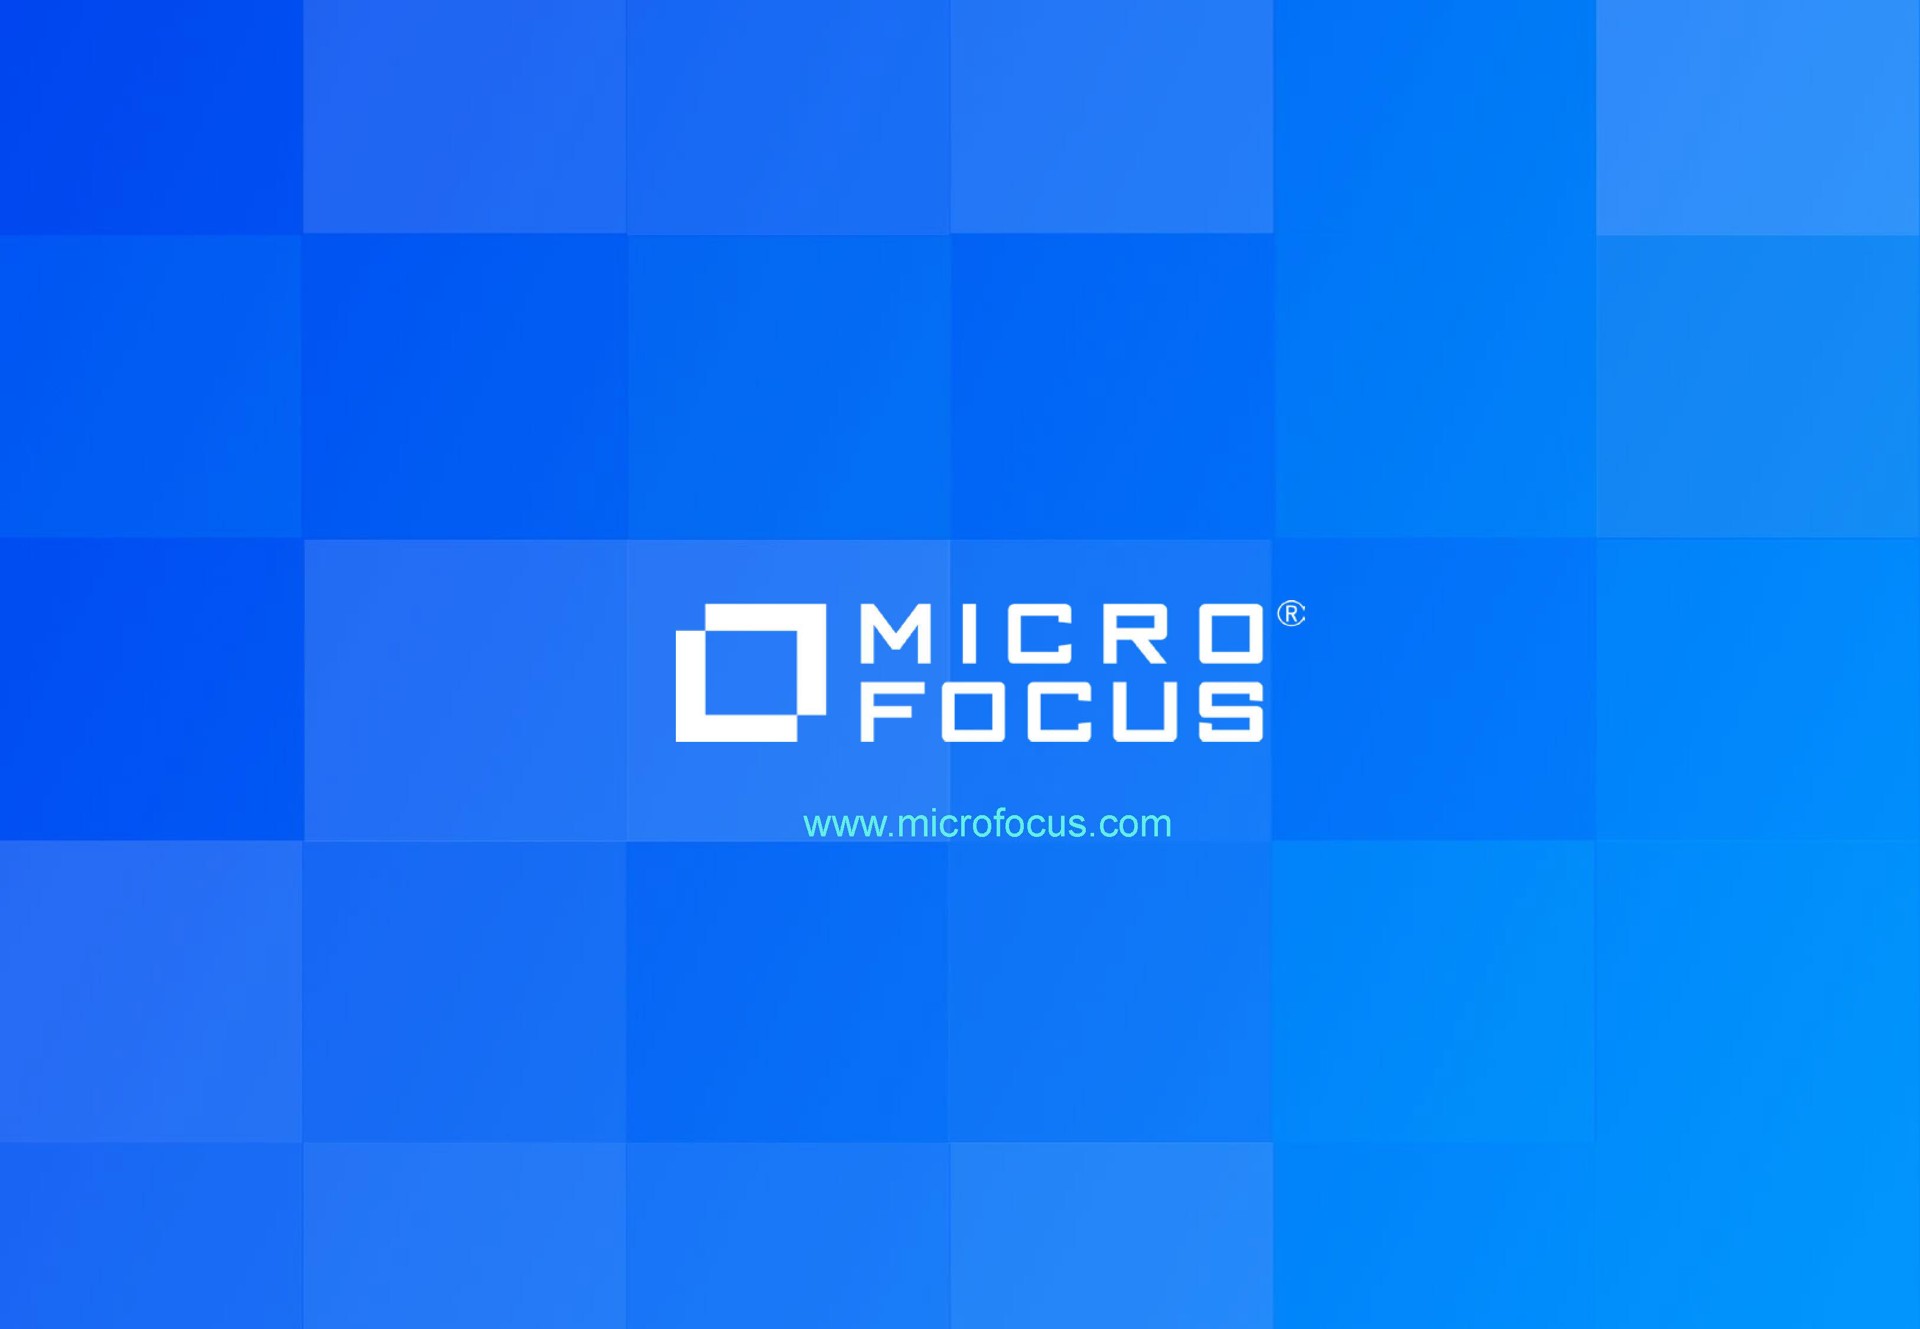 micro focus | Micro Focus